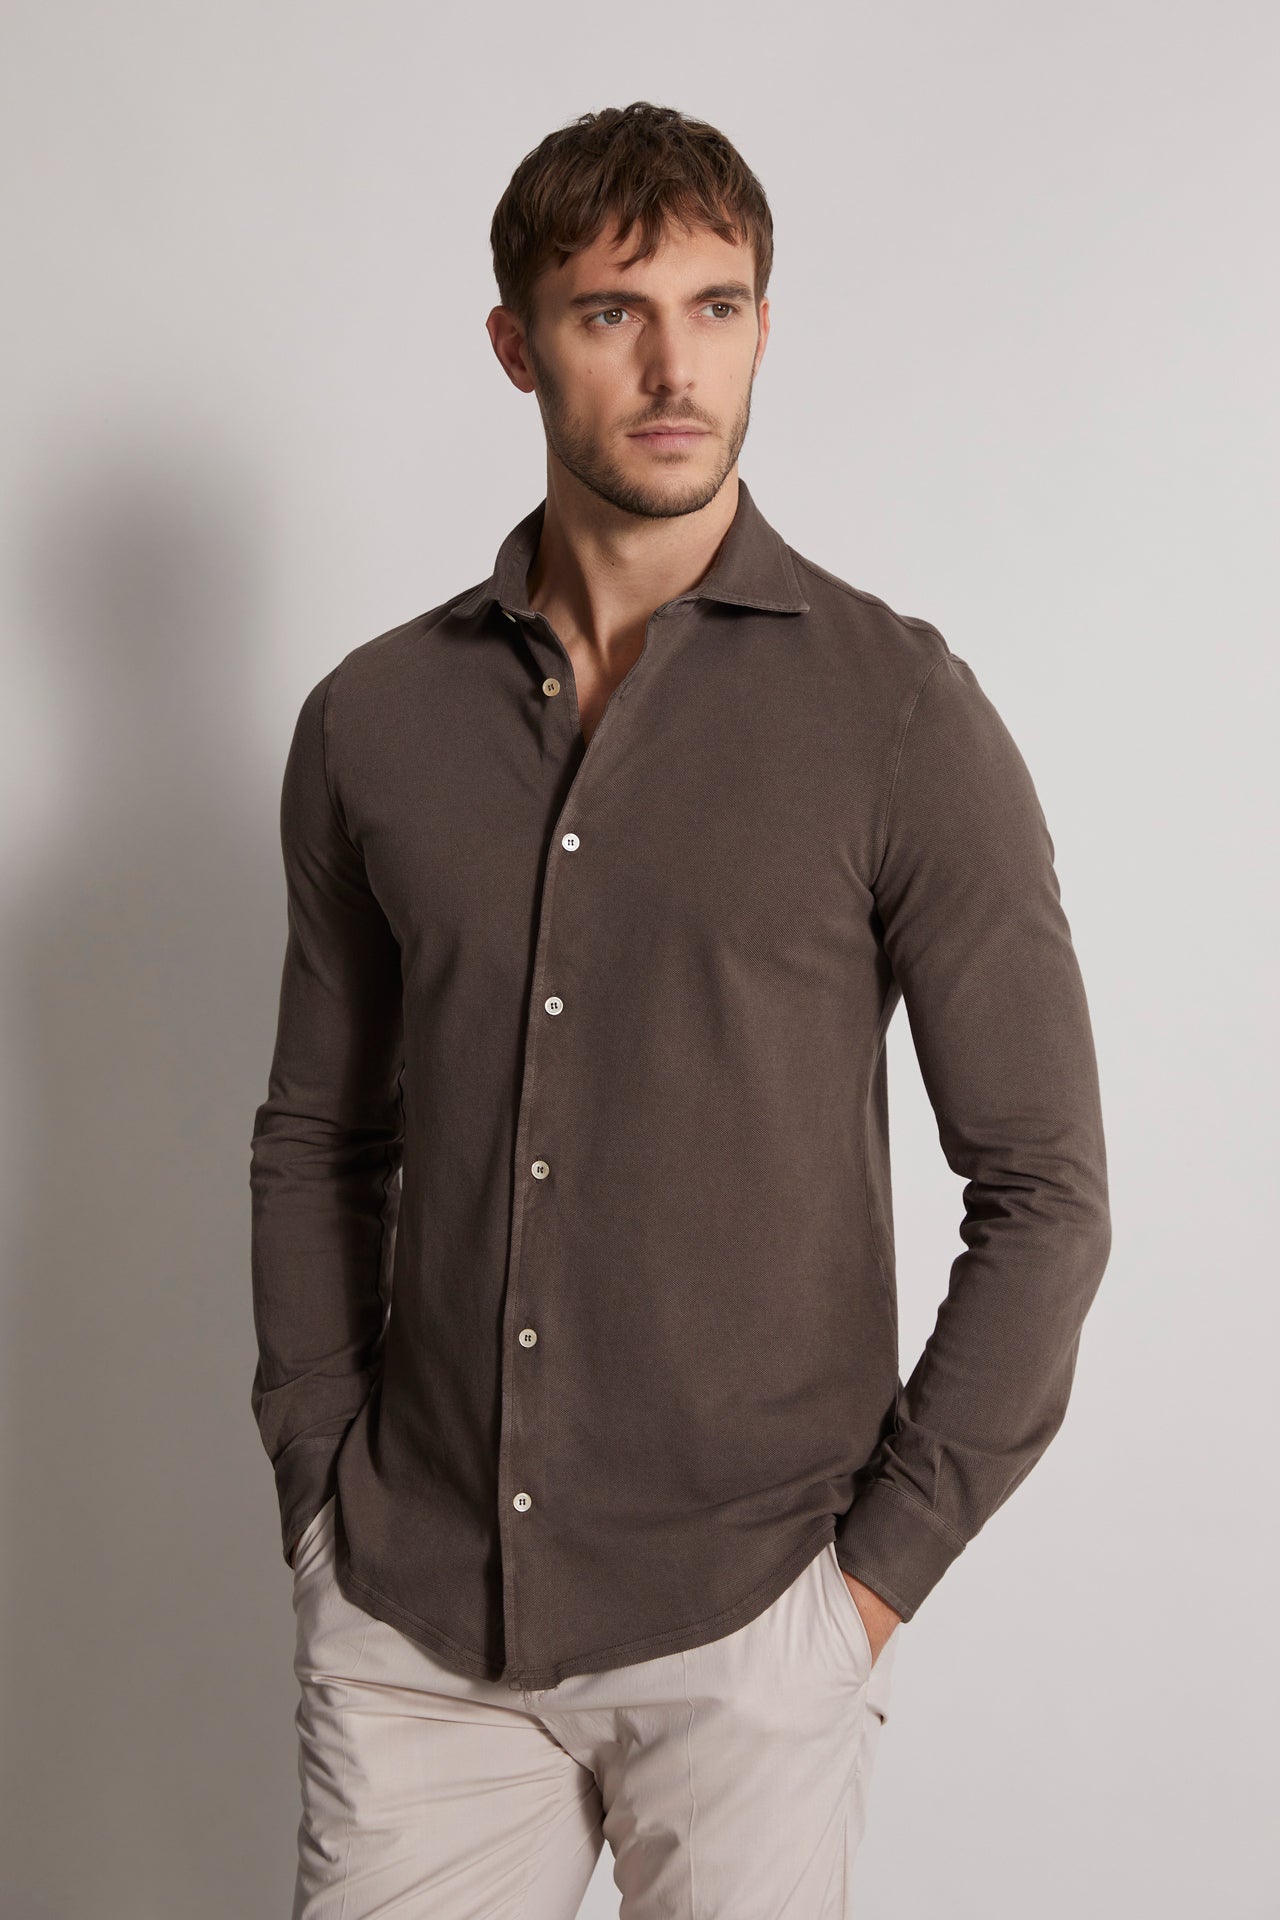 Designer shirt in organic cotton: brown